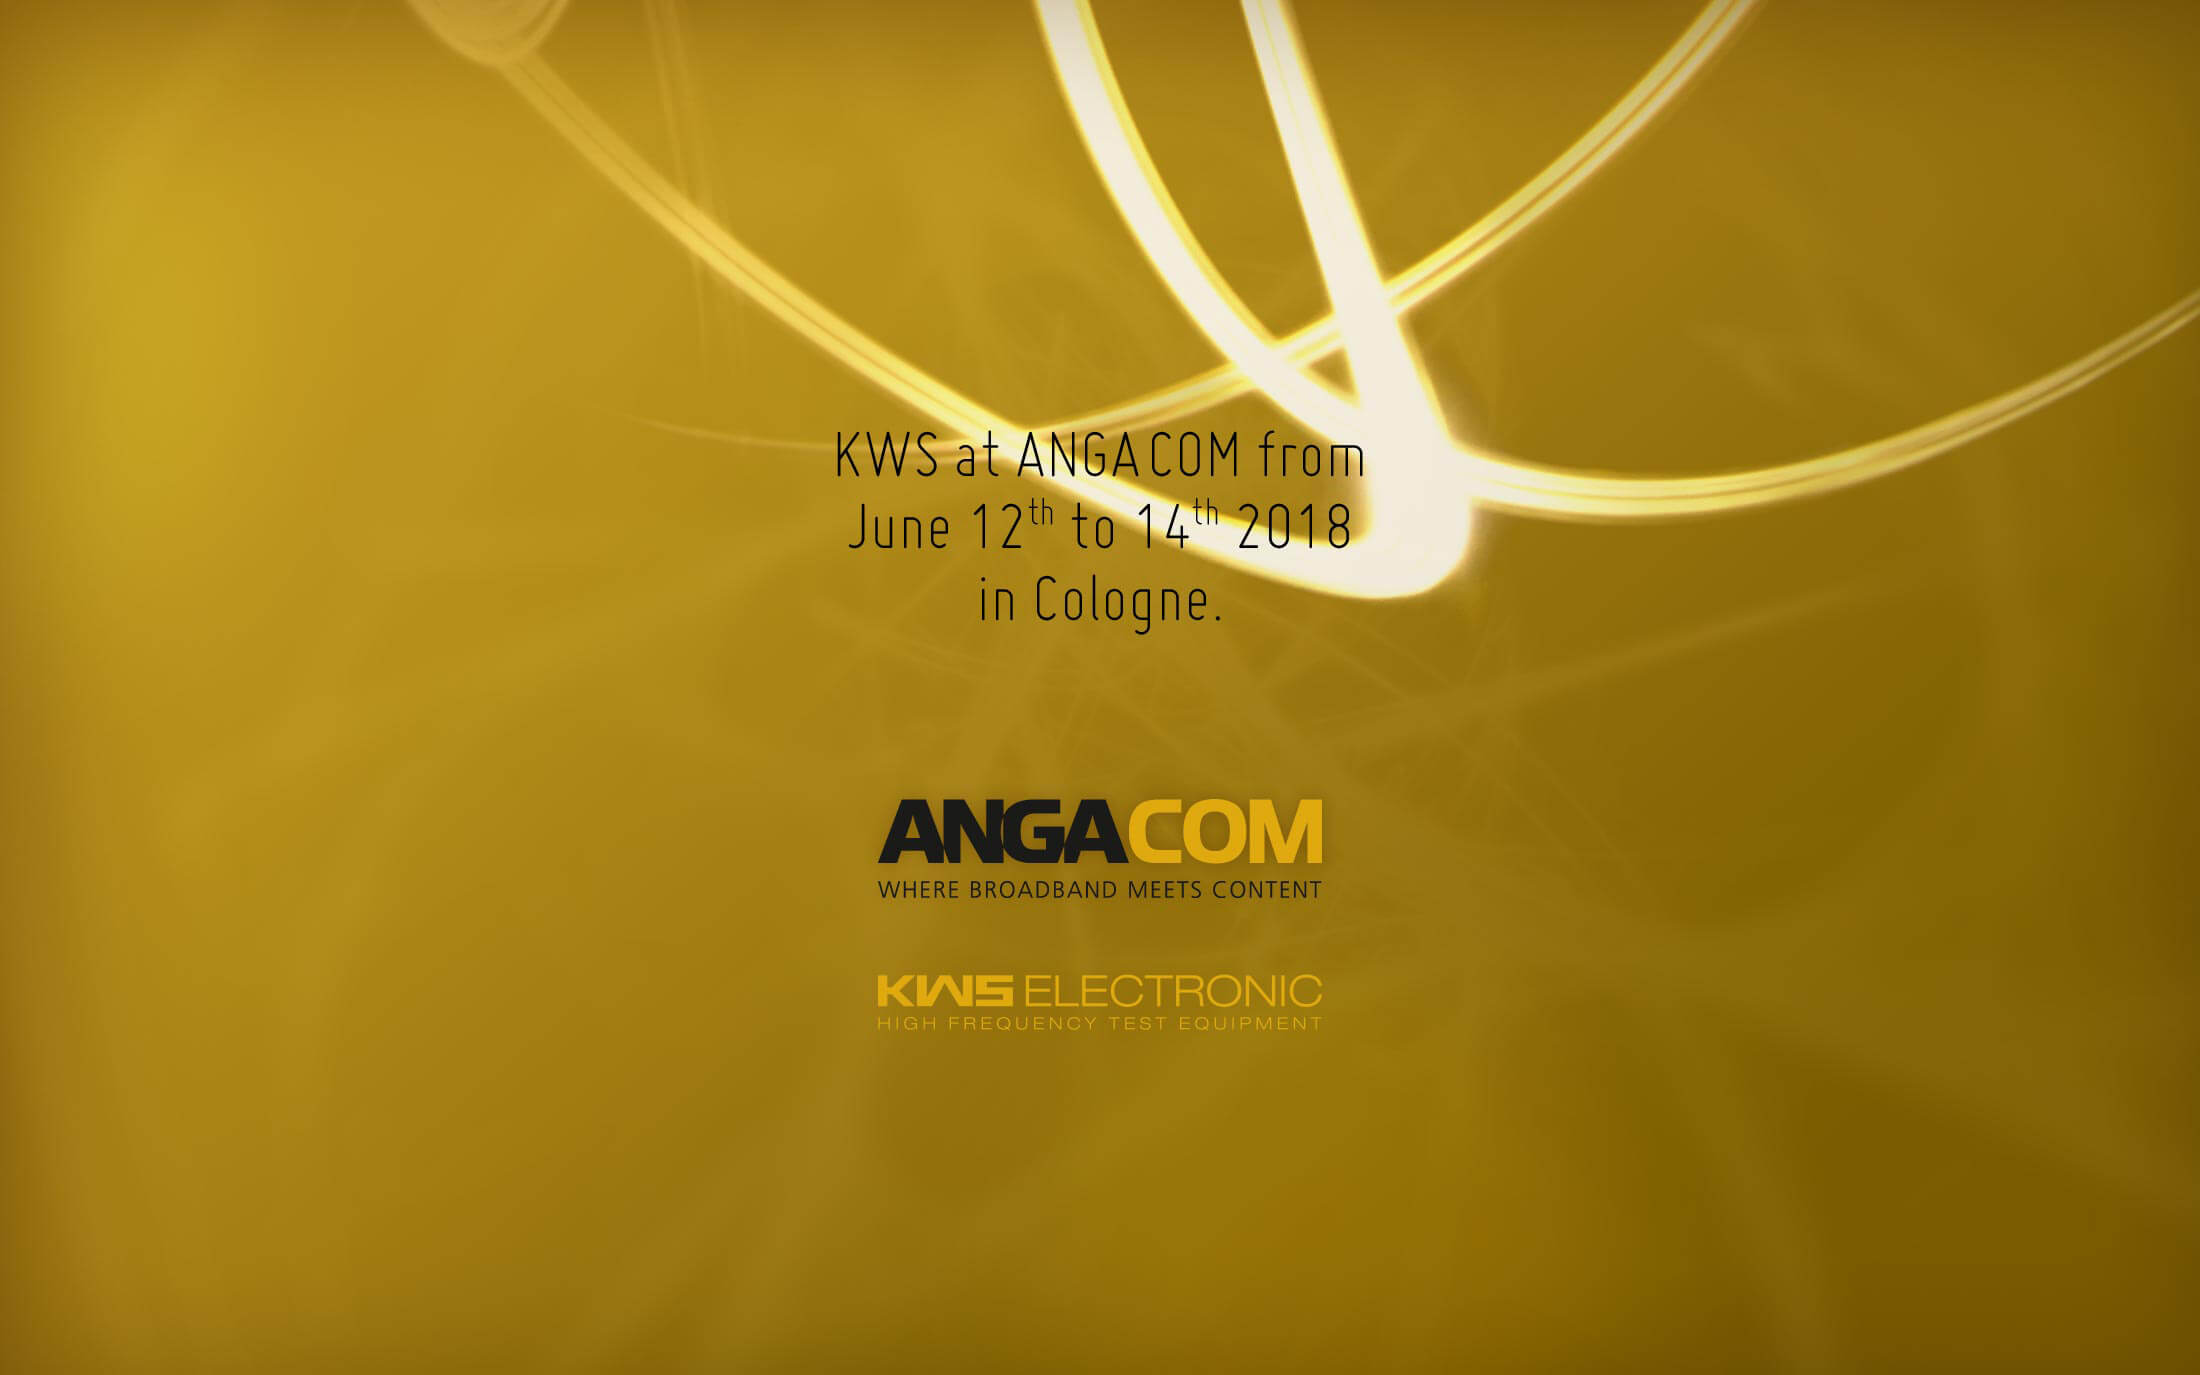 KWS Electronic News 2018: ANGA COM 2019 at Köln